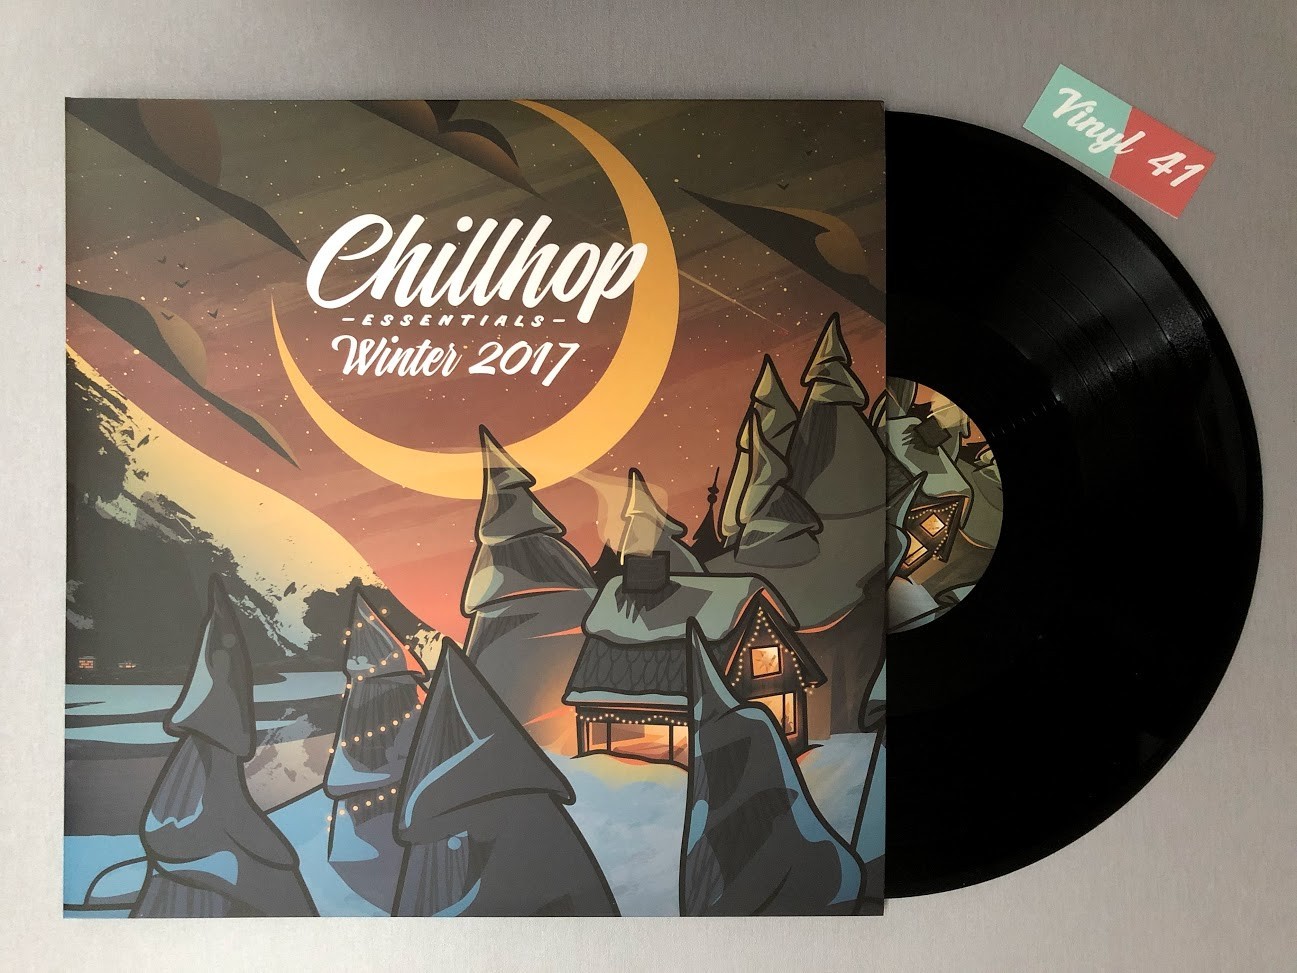 Chillhop Essentials - Winter 2017 | Vinyl 41 ... #uffjedreht!